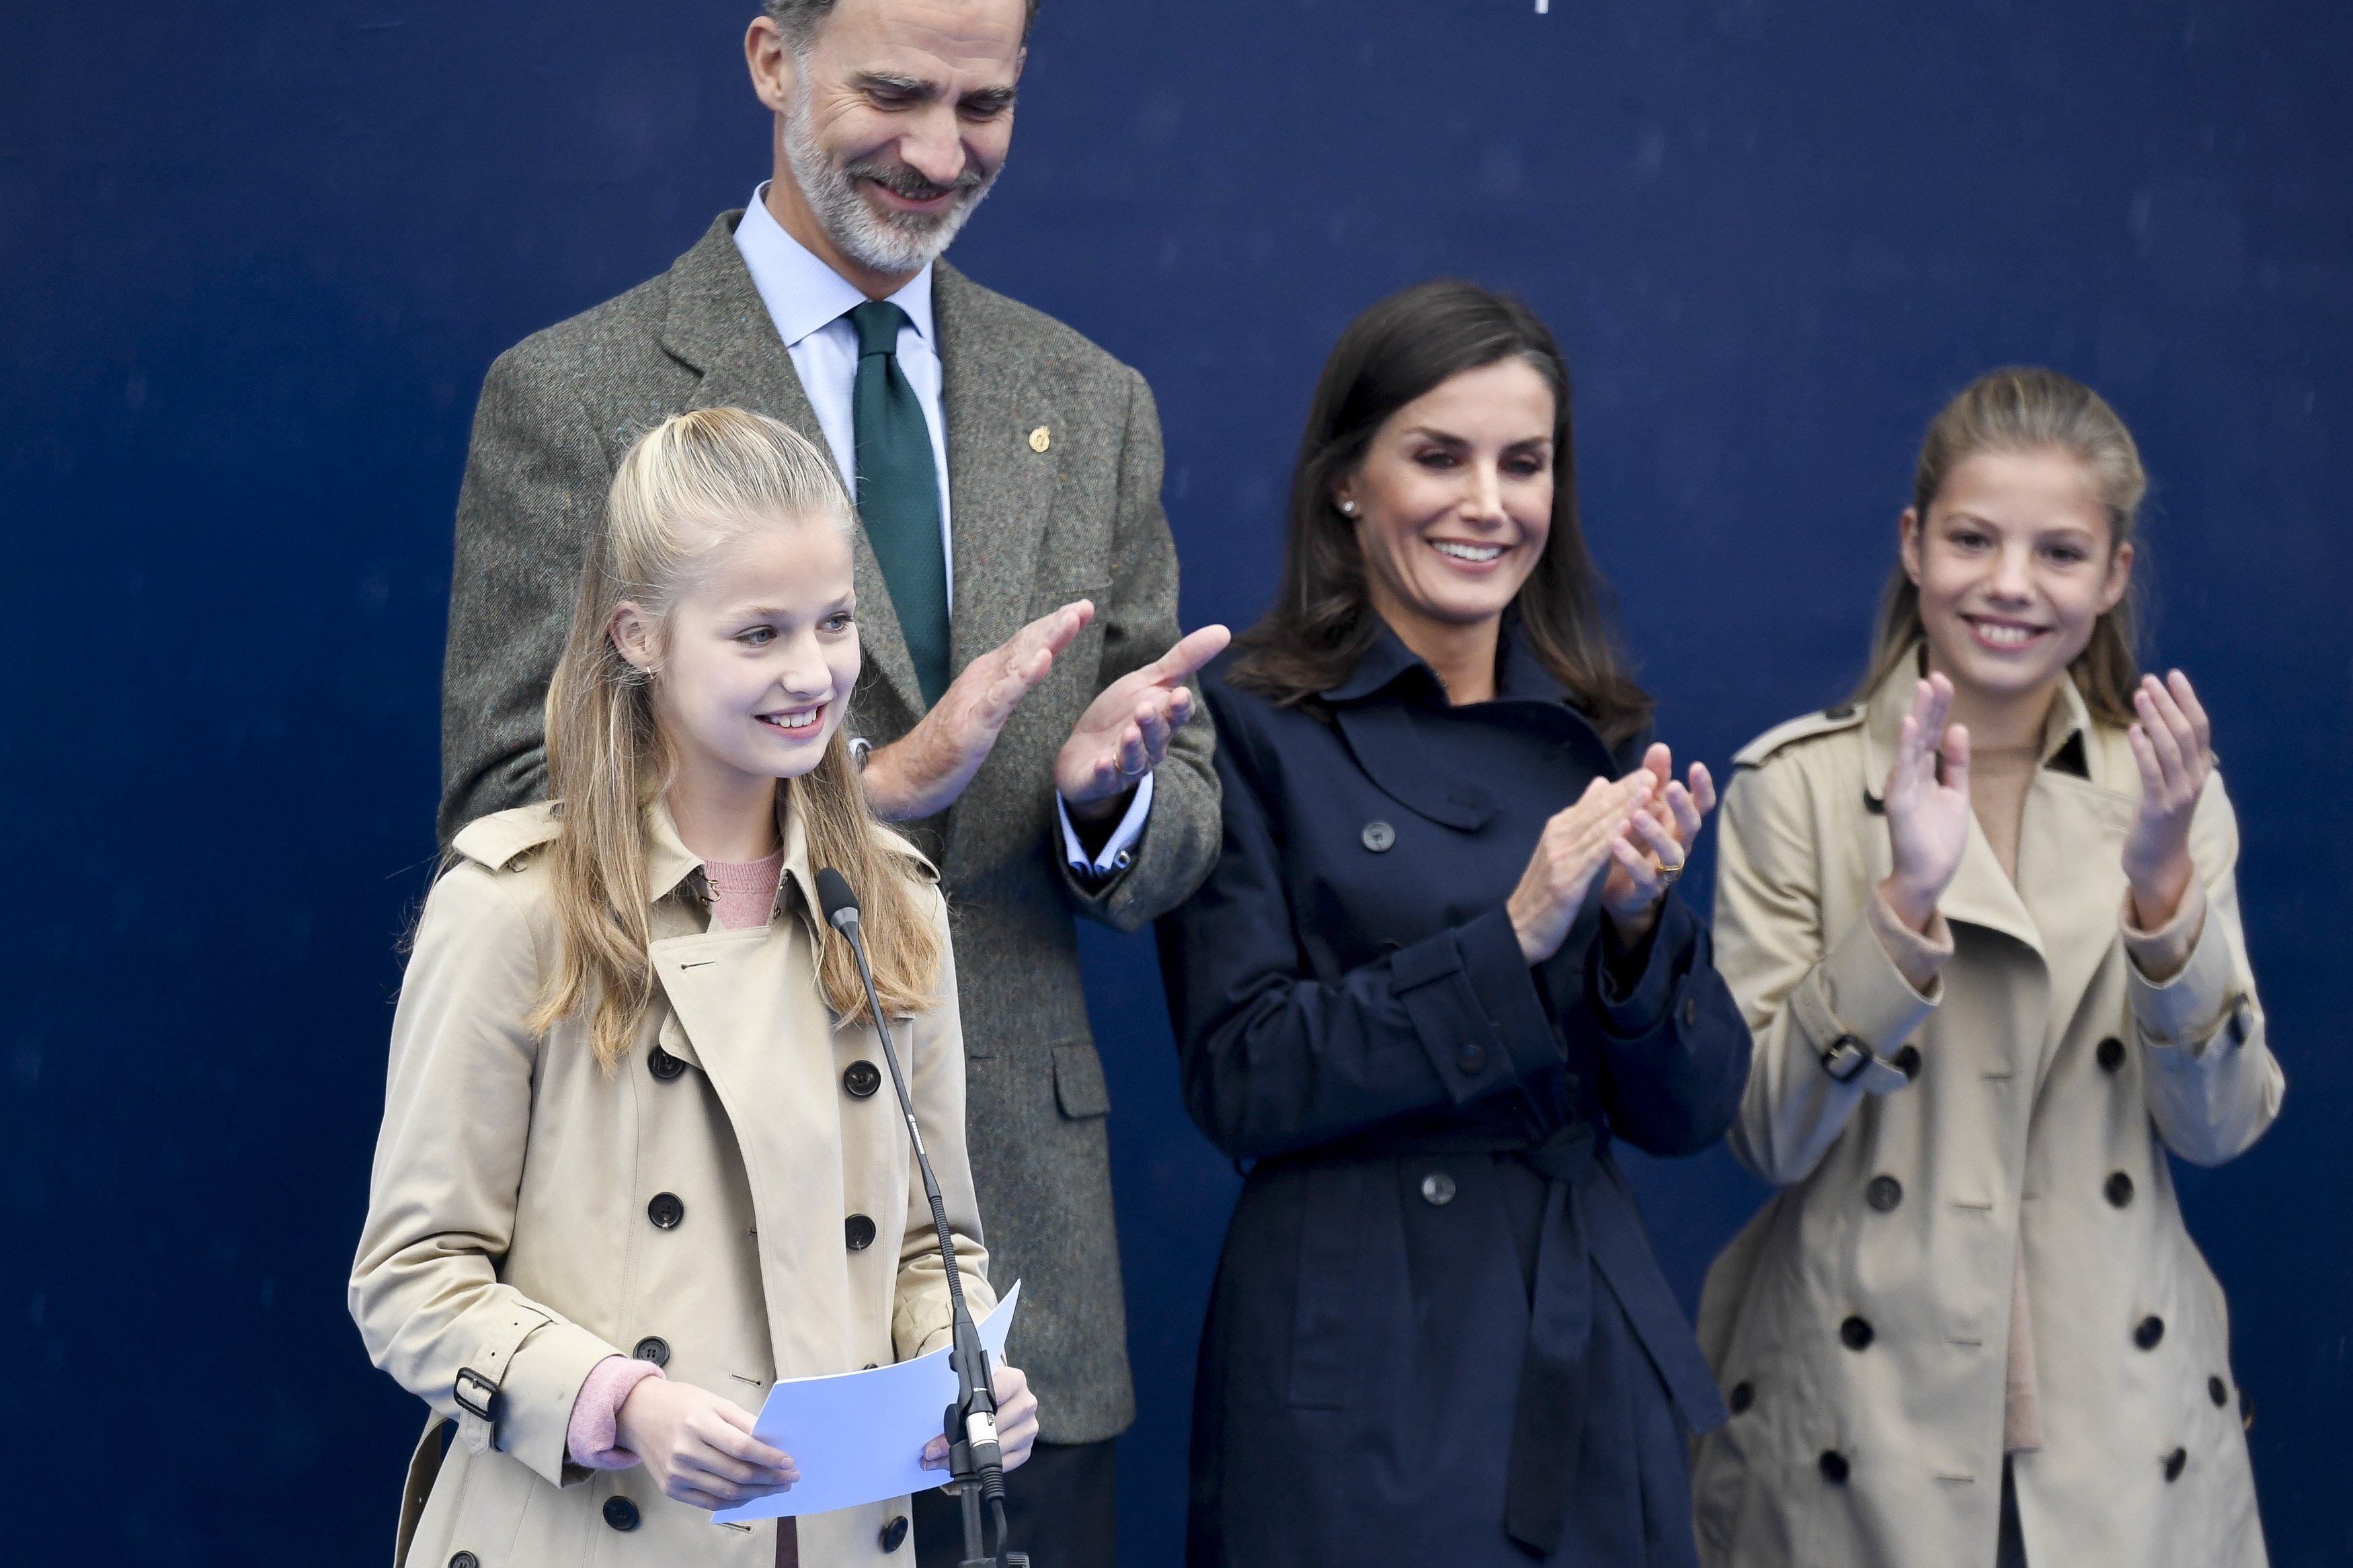 El Rey Felipe VI de España en el Palacio de Zarzuela con la Reina Letizia, la Princesa Leonor y la Princesa Sofía el 19 de junio de 2014 en Madrid, España. | Foto: Getty Images